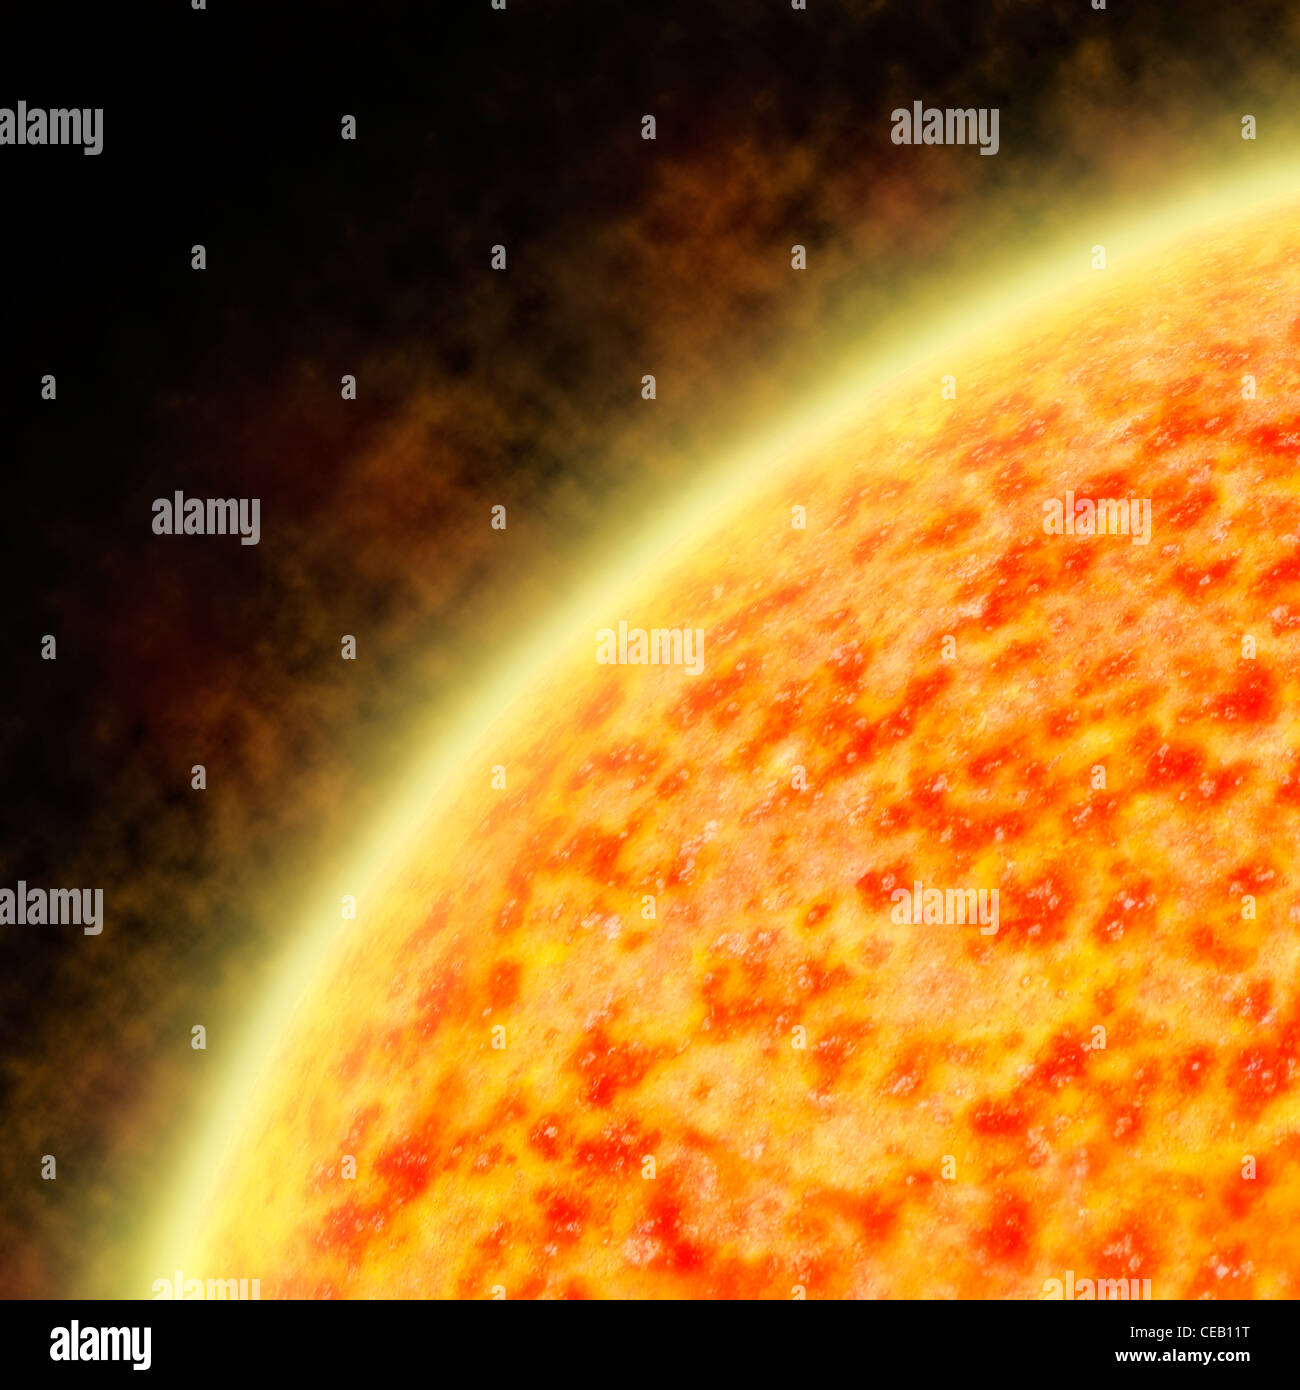 Ilustración del sol radiante un viento solar mostrando regiones de temperatura irregular Foto de stock